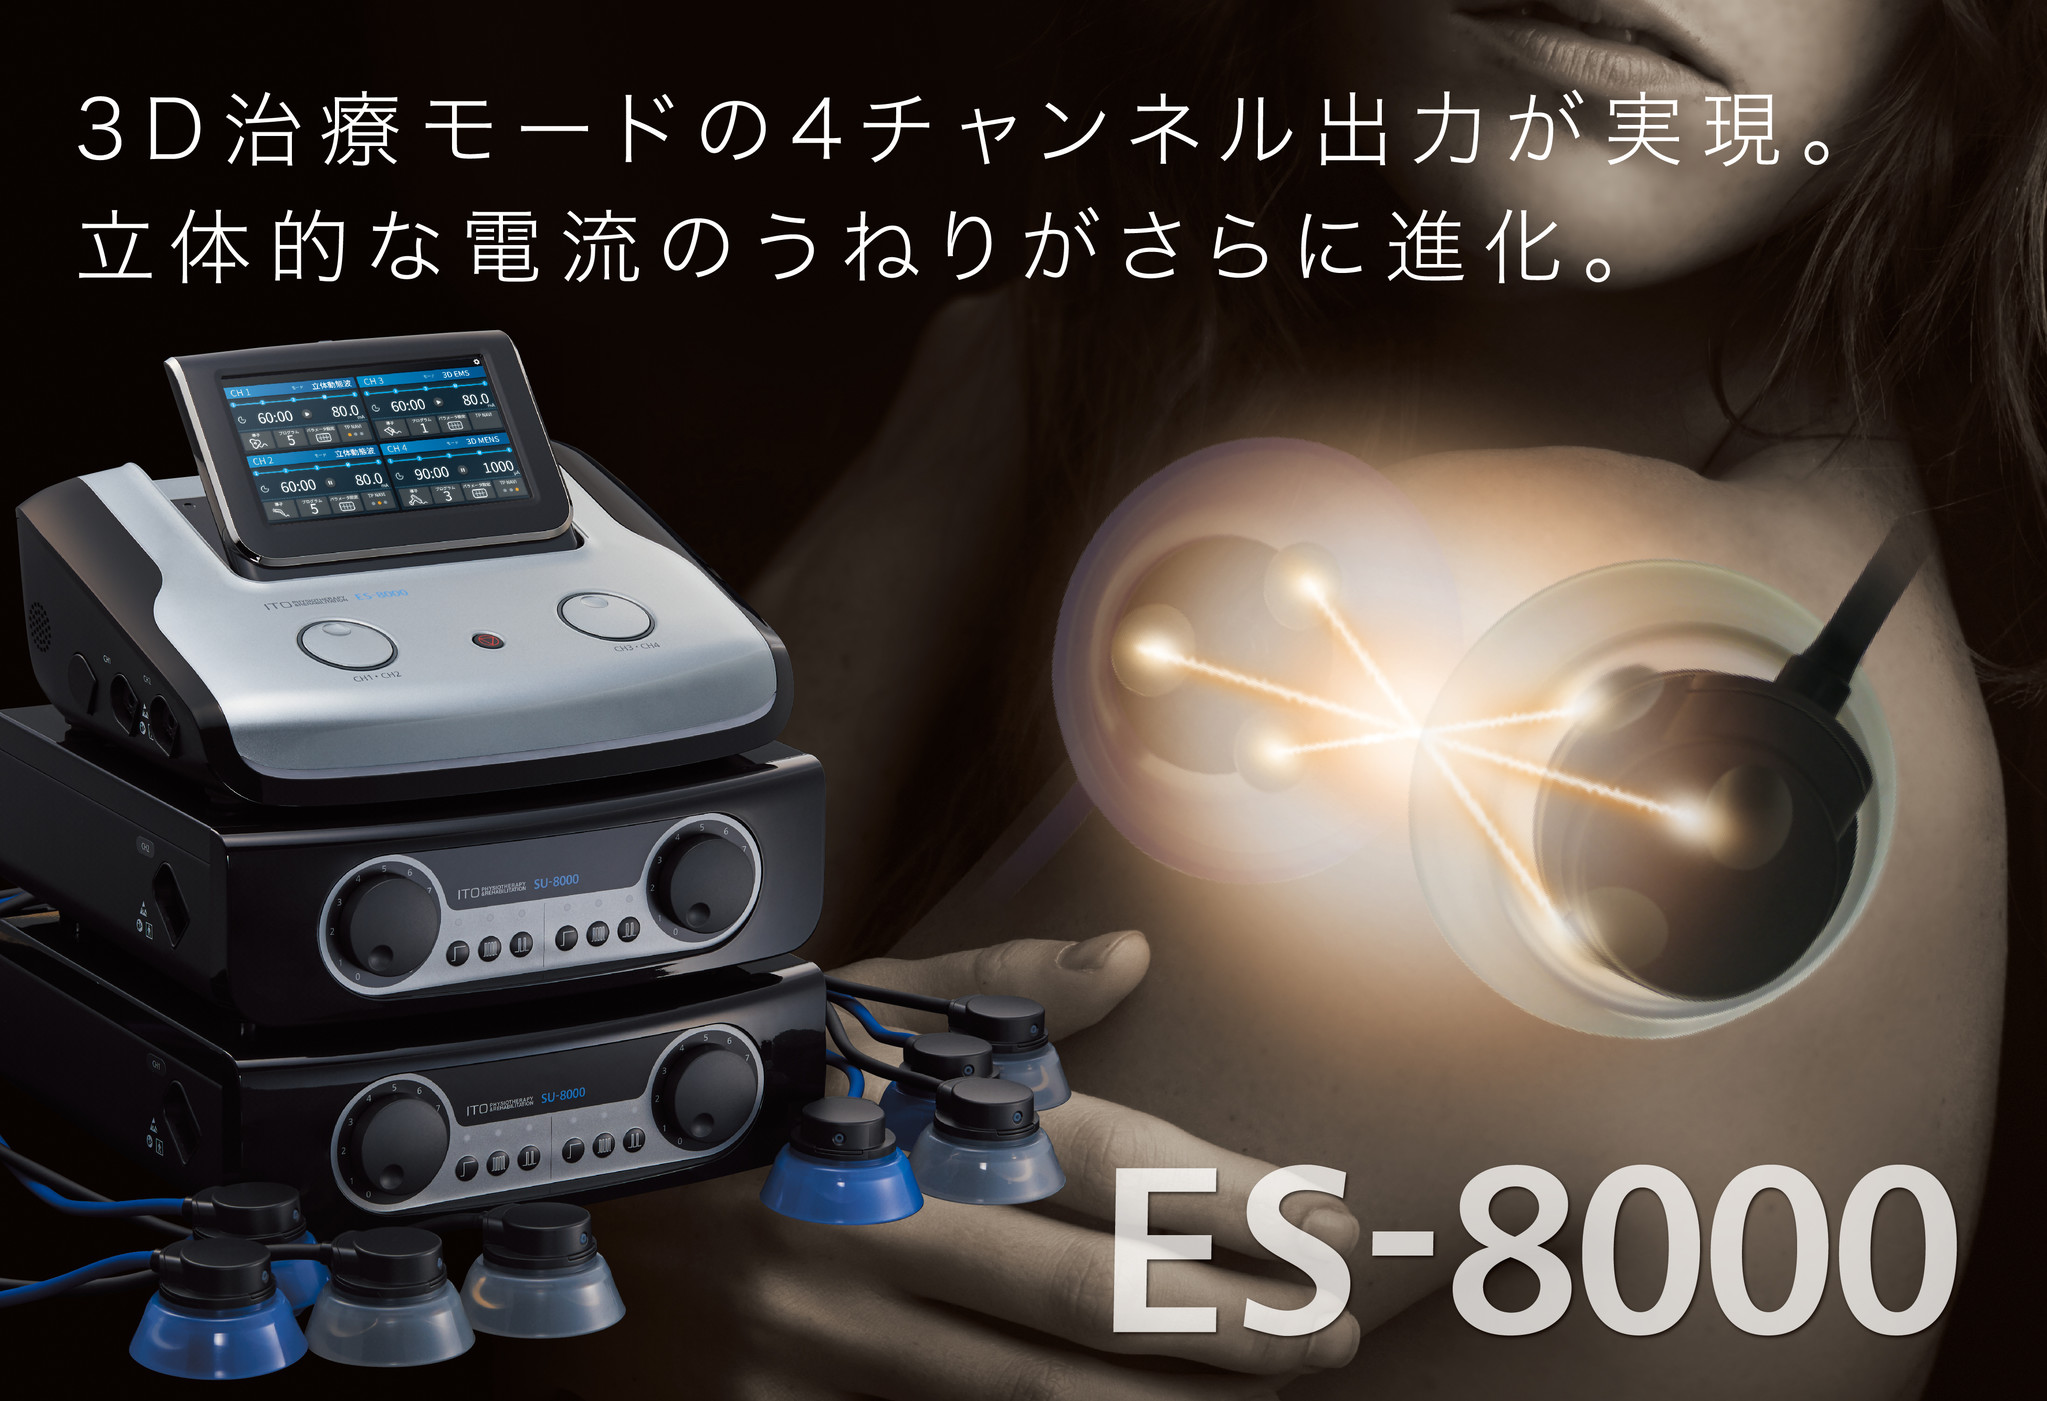 伊藤超短波、ESシリーズの最新機種となる干渉電流型低周波治療器 ...